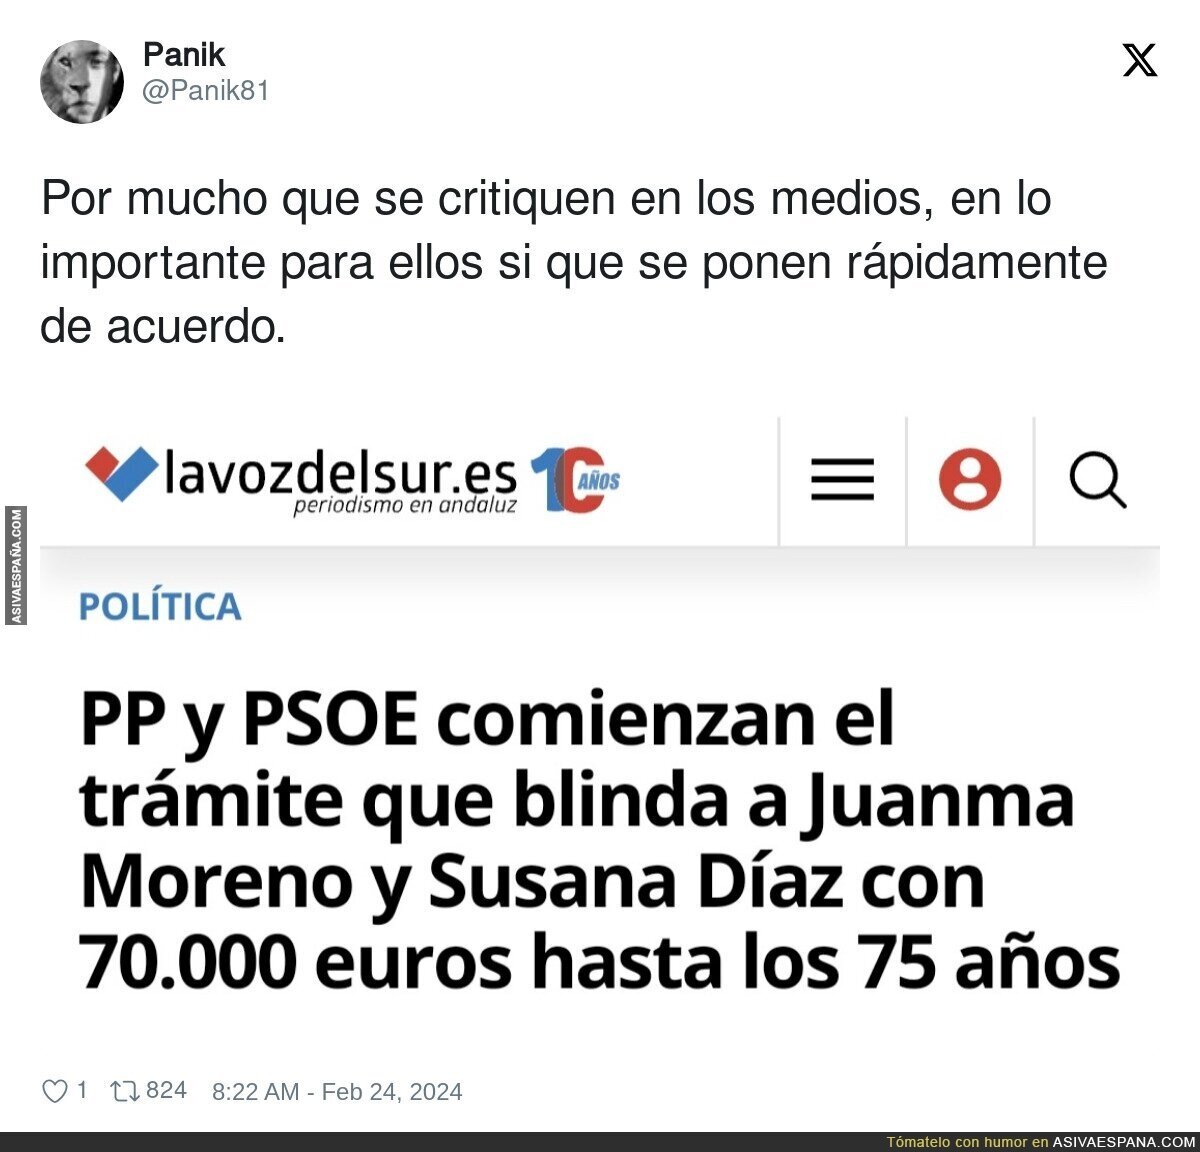 El PP y PSOE unidos en lo importante